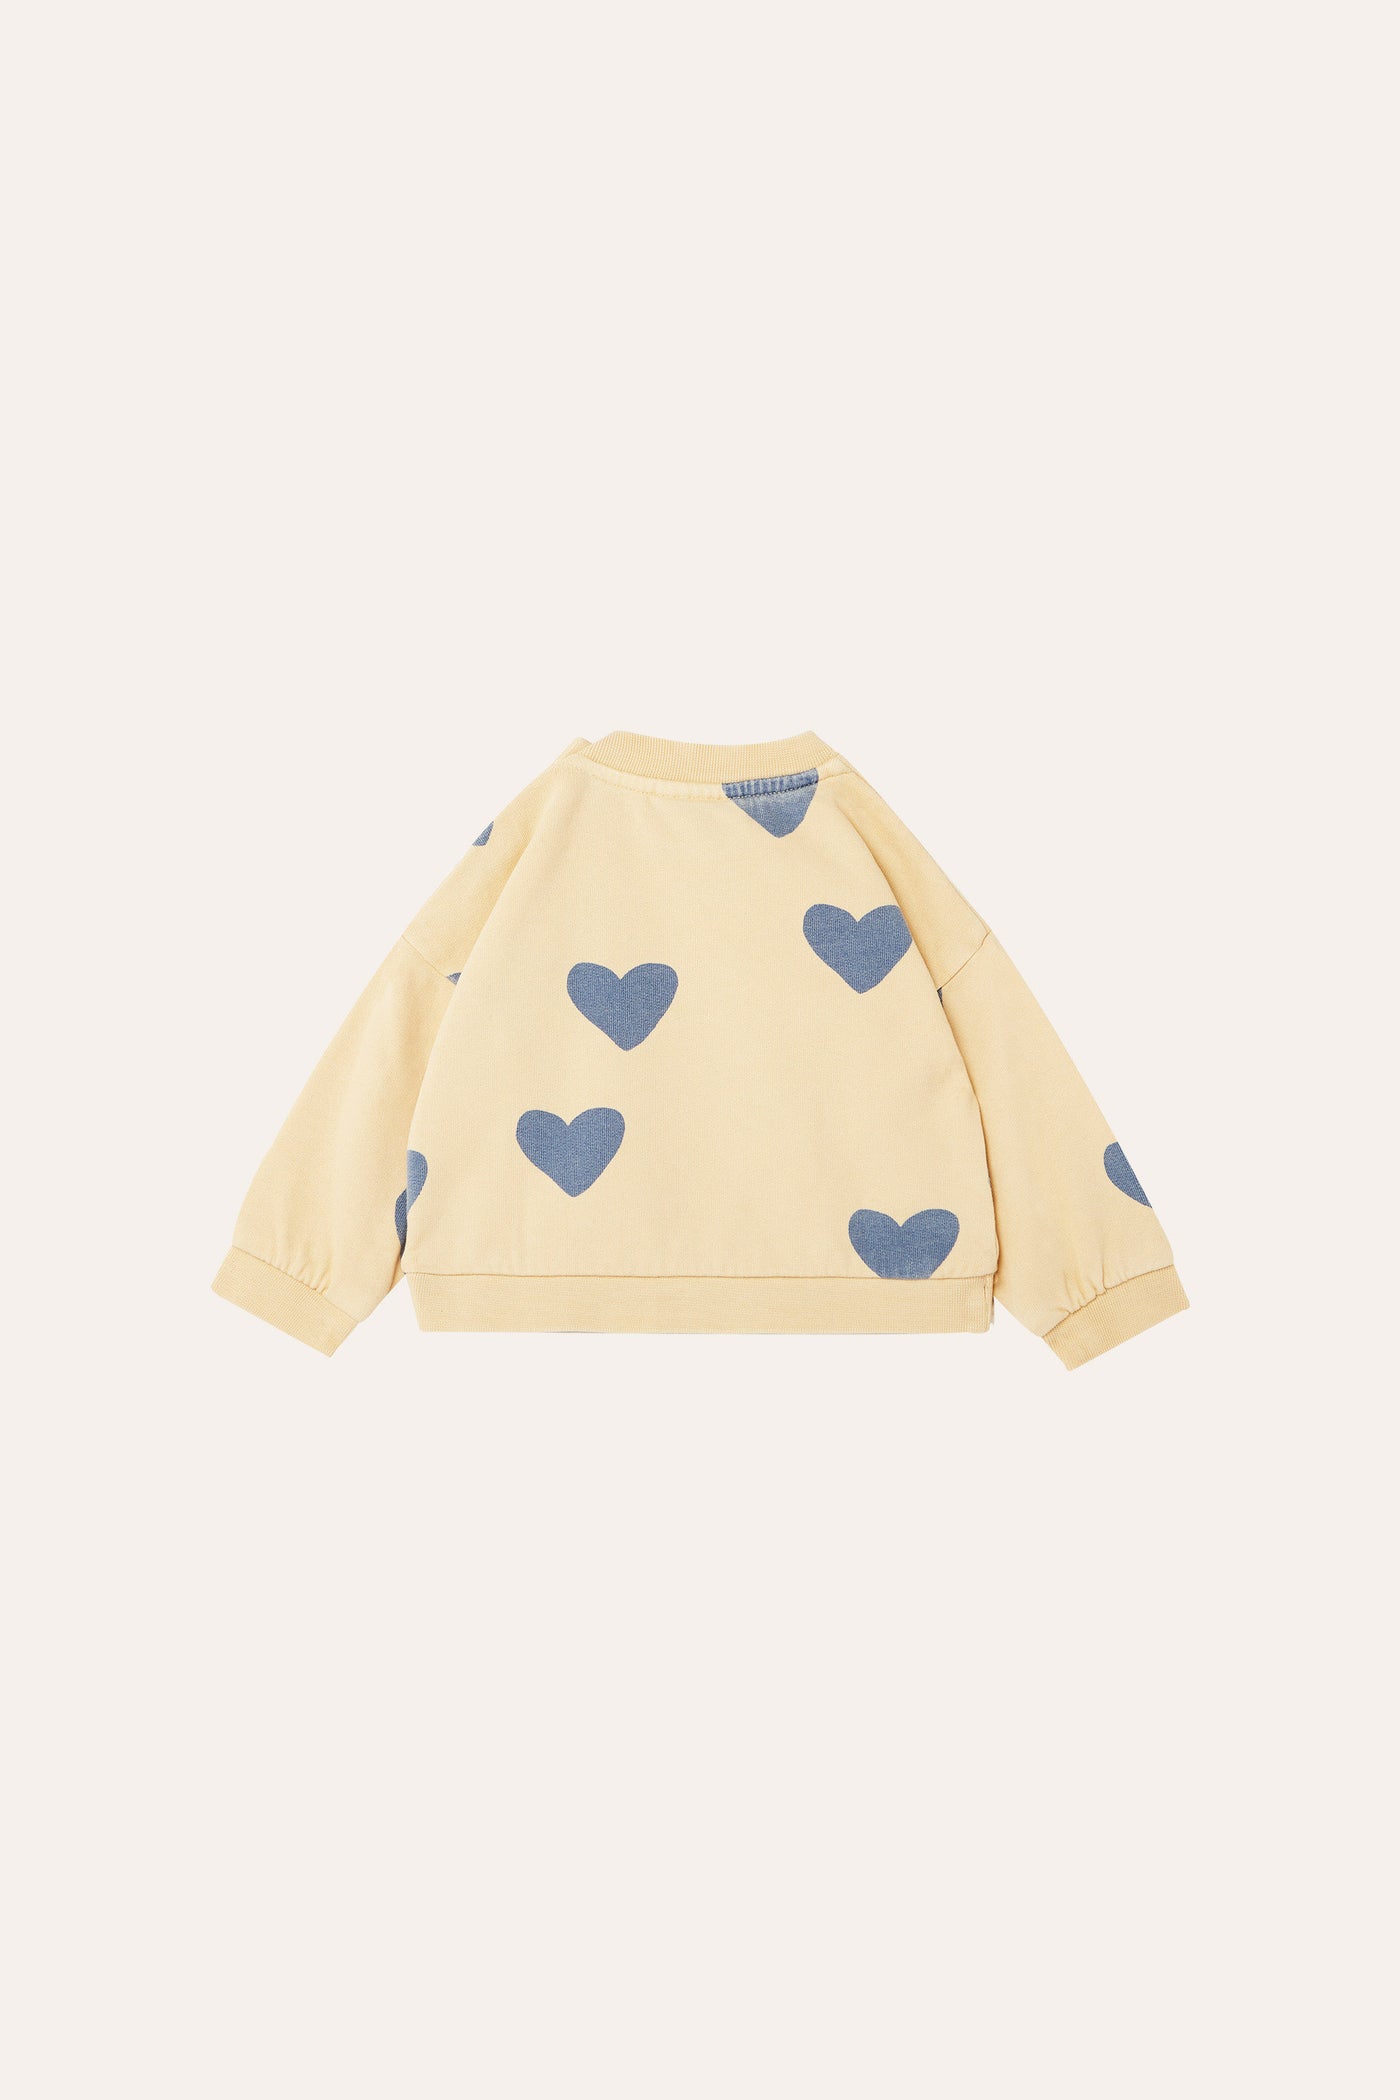 The Campamento baby hearts sweatshirt